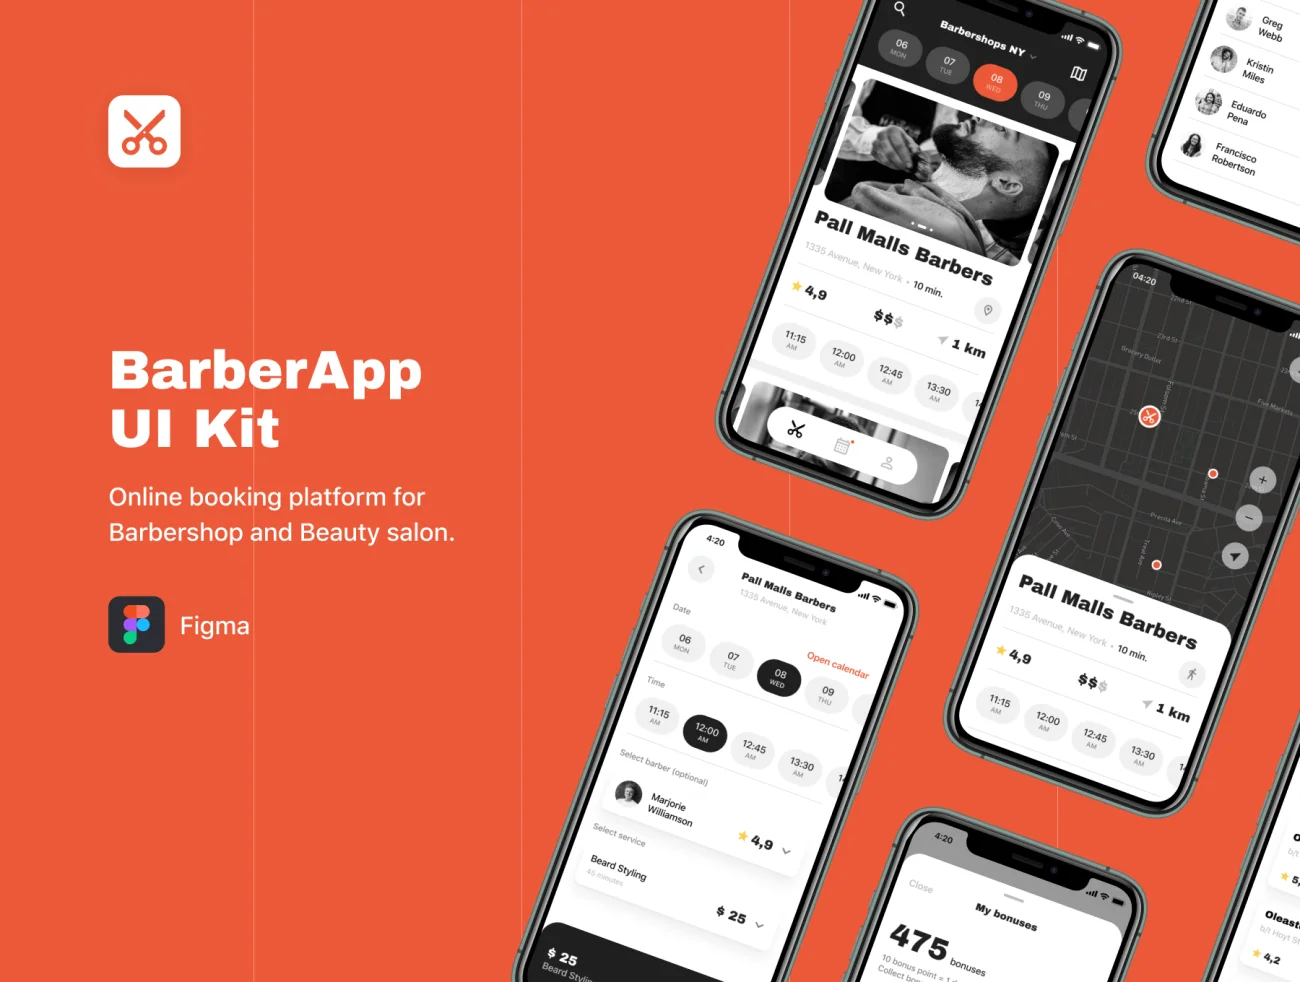 BarberApp UI Kit 剪发理发剃须理发店沙龙App用户界面套件-UI/UX-到位啦UI